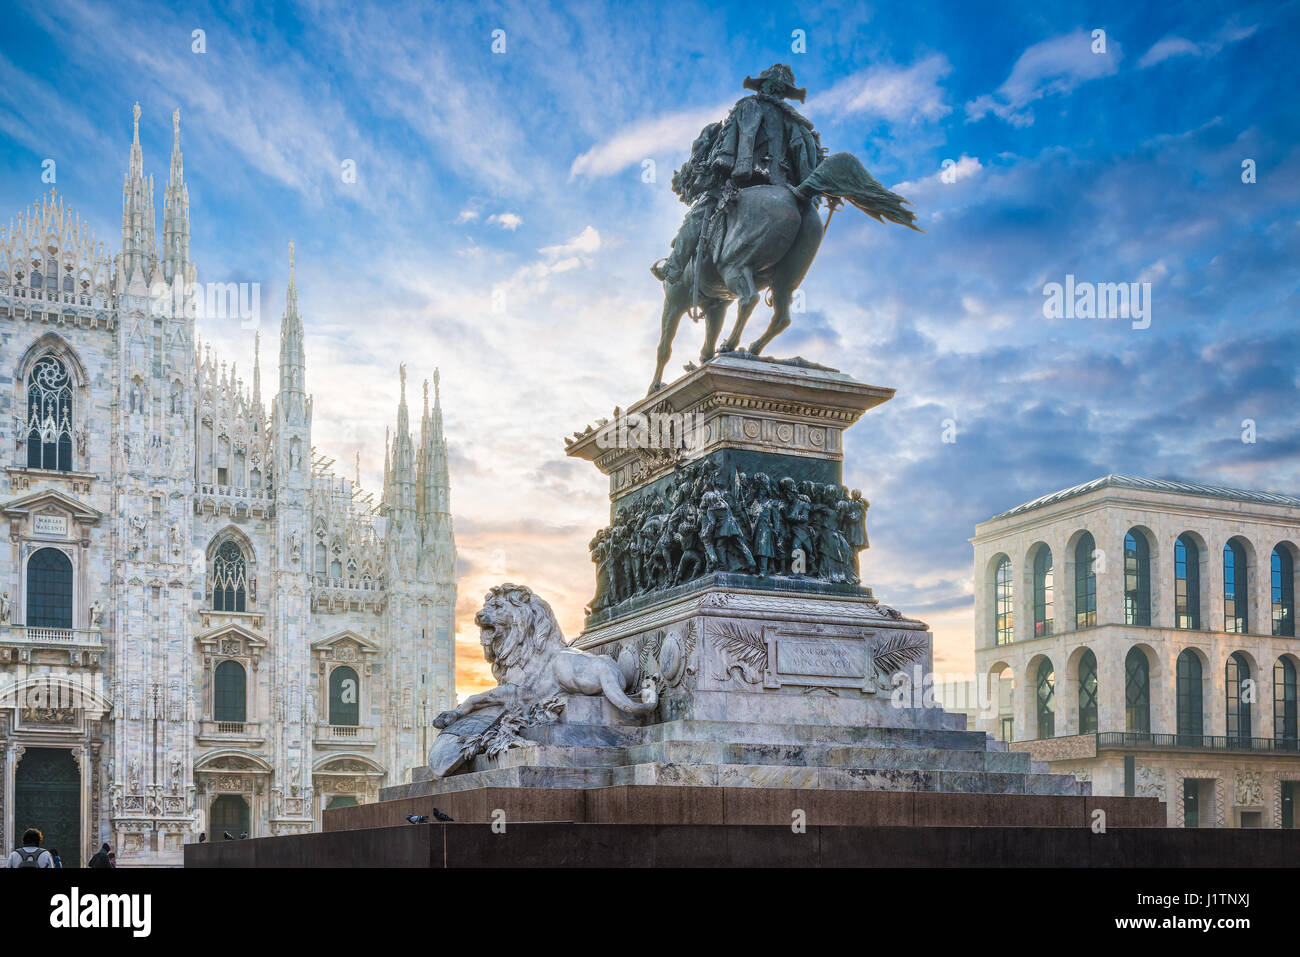 Piazza del Duomo di Milano, Italia. Monumento equestre di re Vittorio Emanuele II all'alba. Sullo sfondo il duomo di Milano Foto Stock